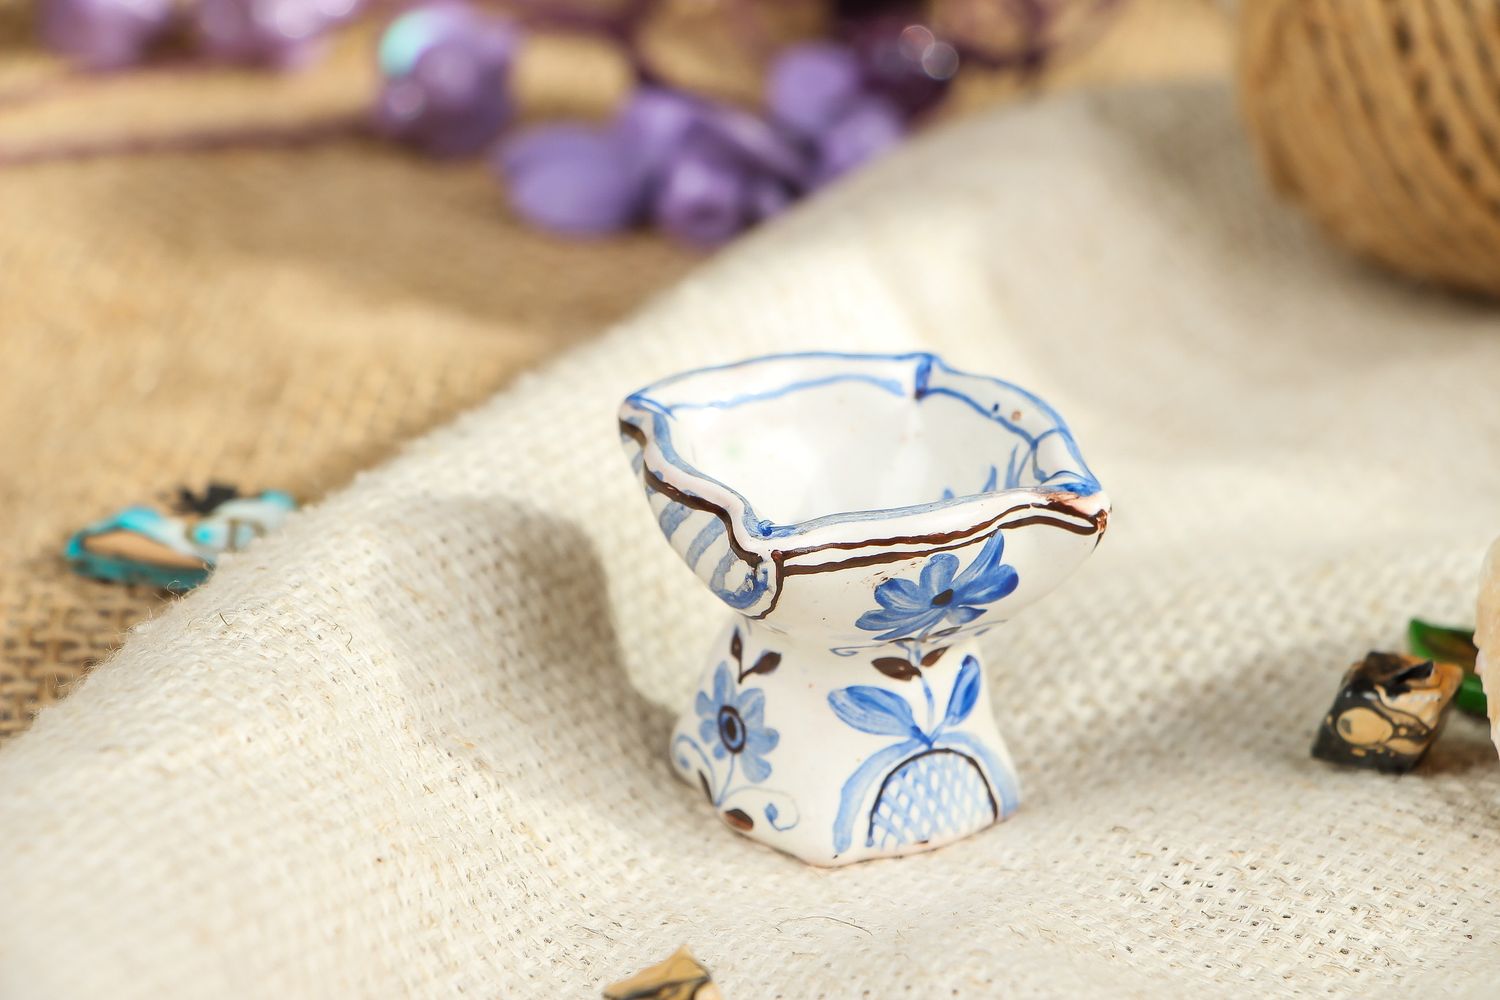 Petit vase en céramique décoratif bleu blanc photo 5